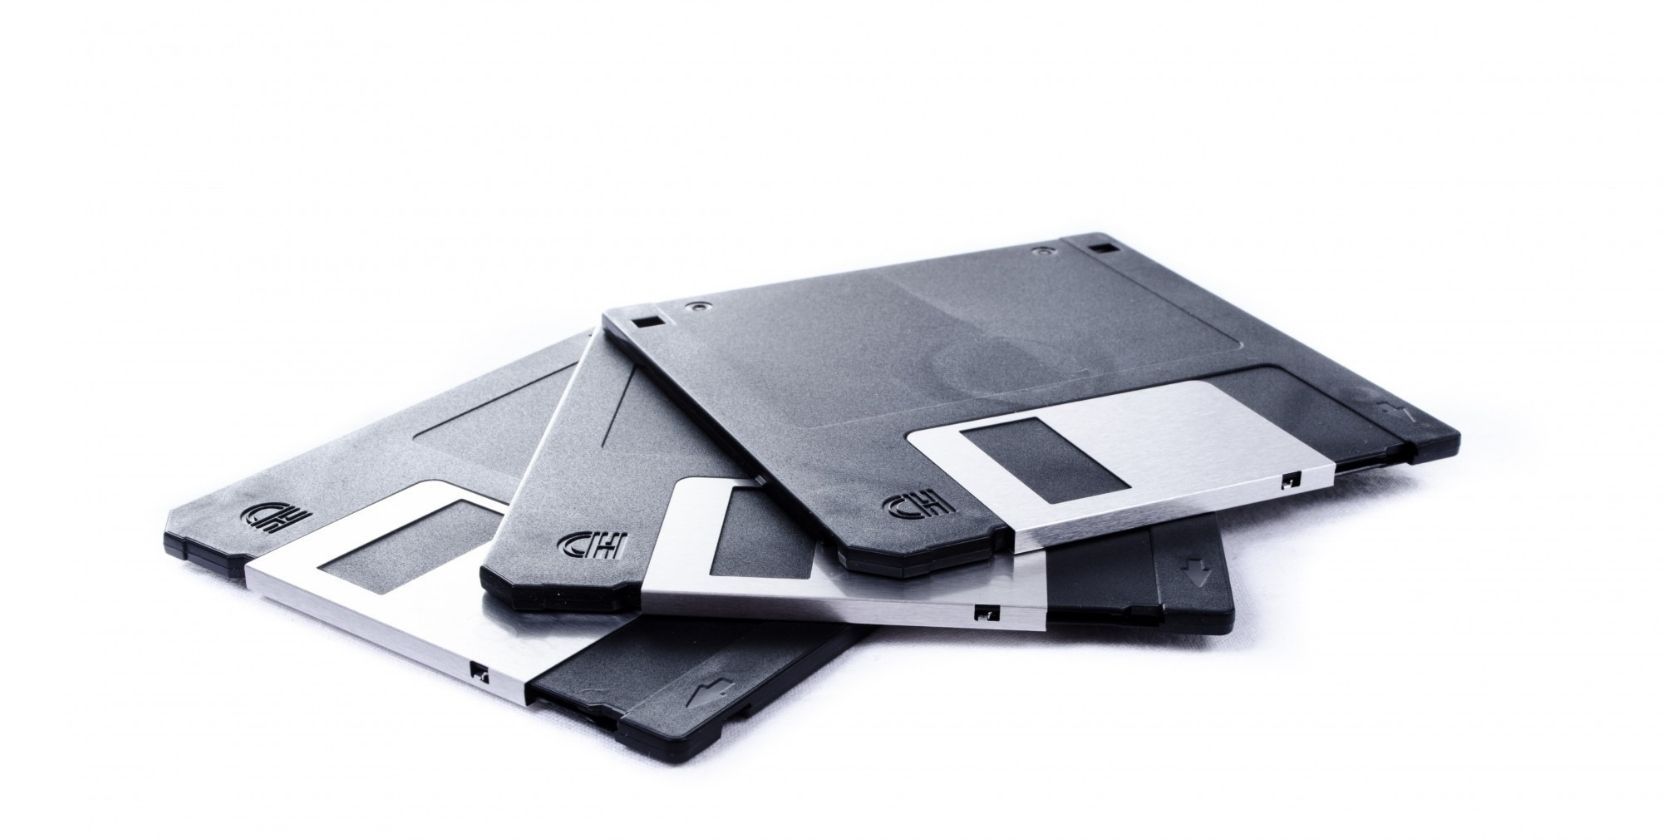 Floppy-disks